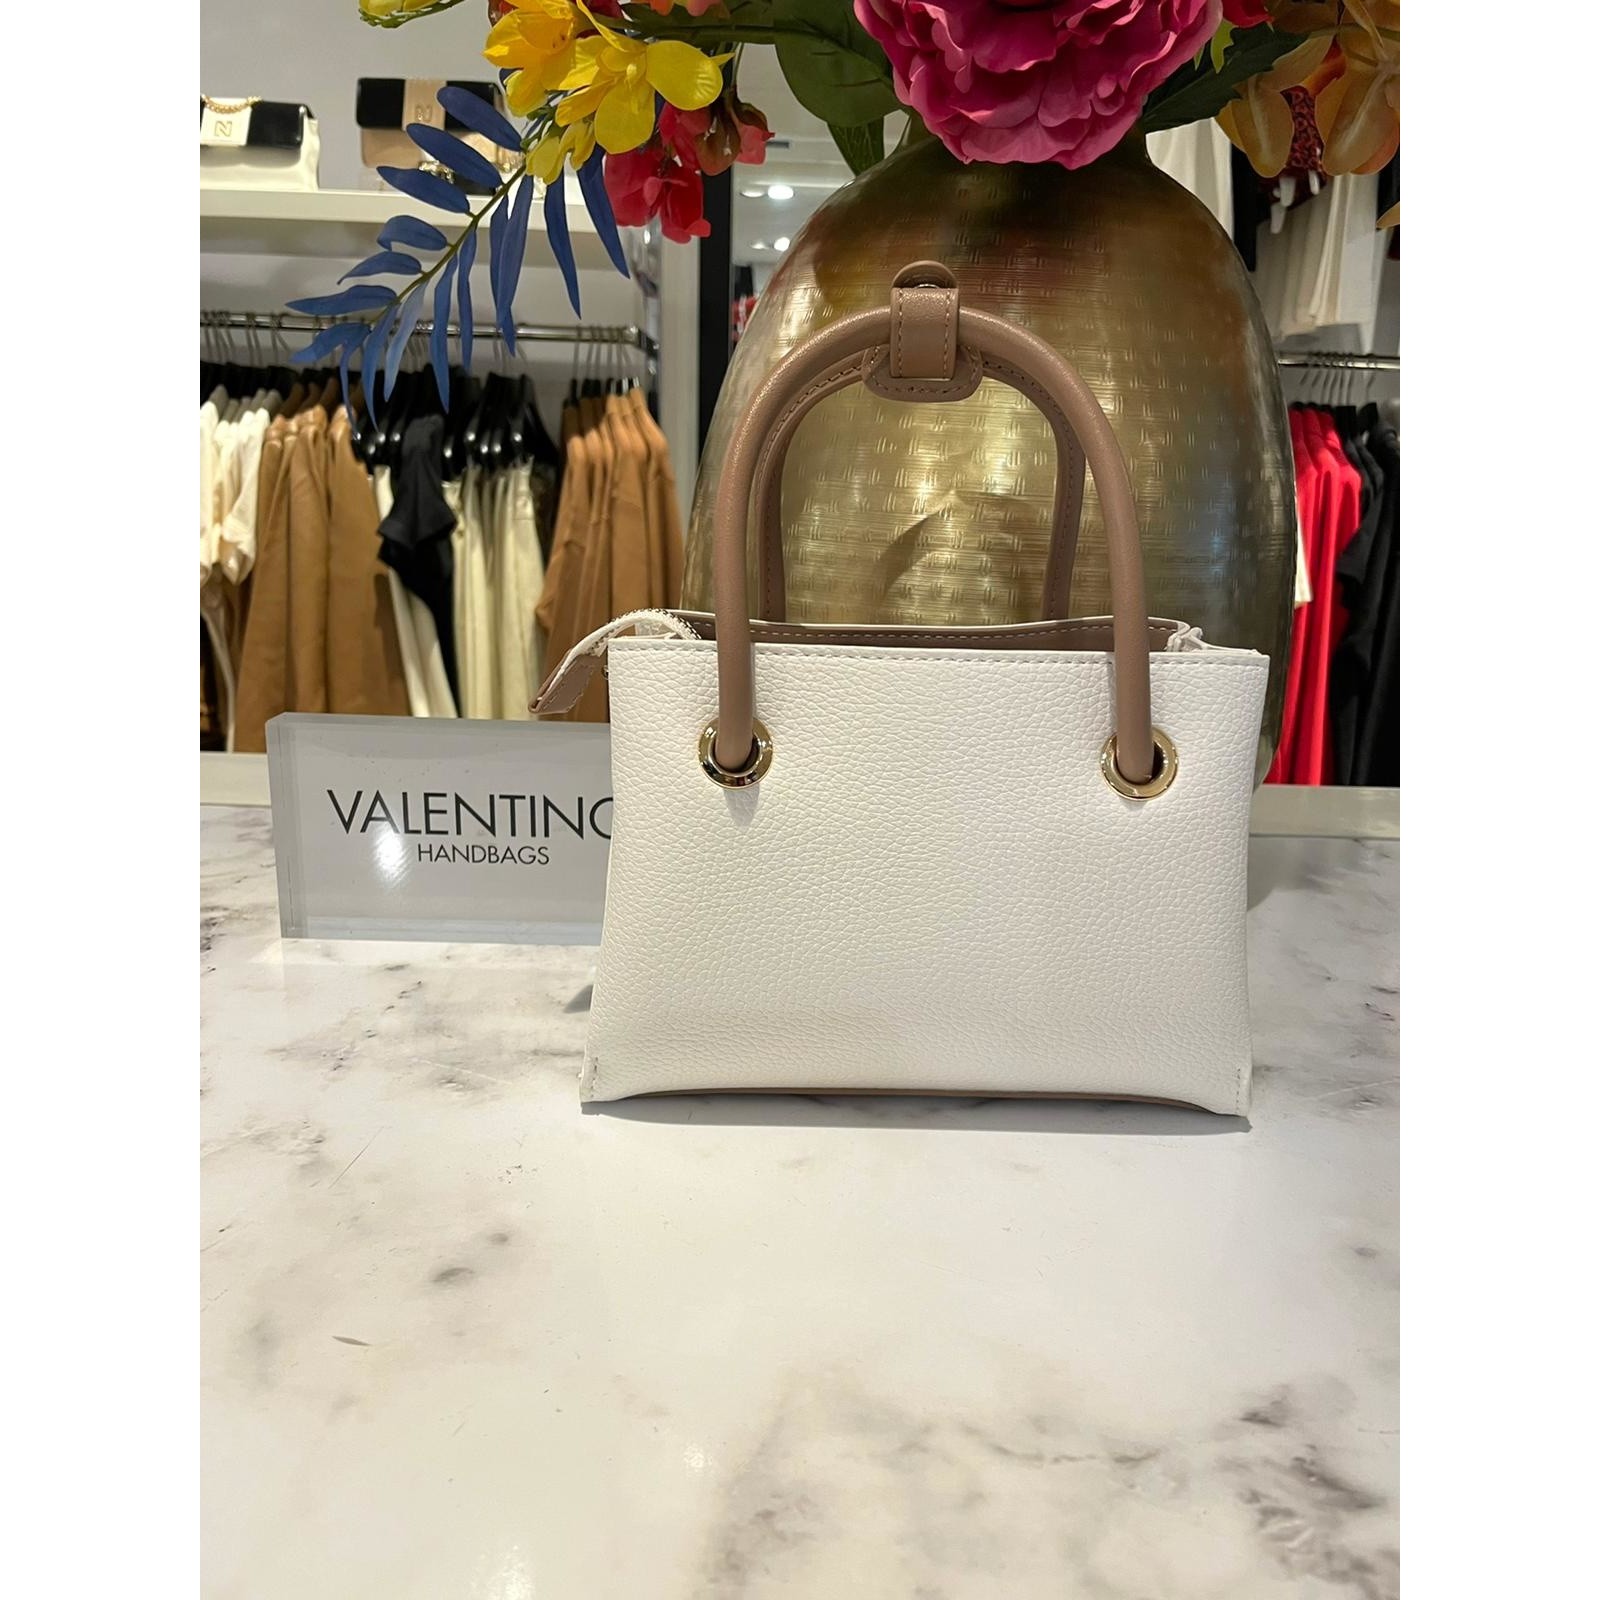 Valentino Bags Mini Shopper Alexie Tote Blanco/Cuoio Valentino